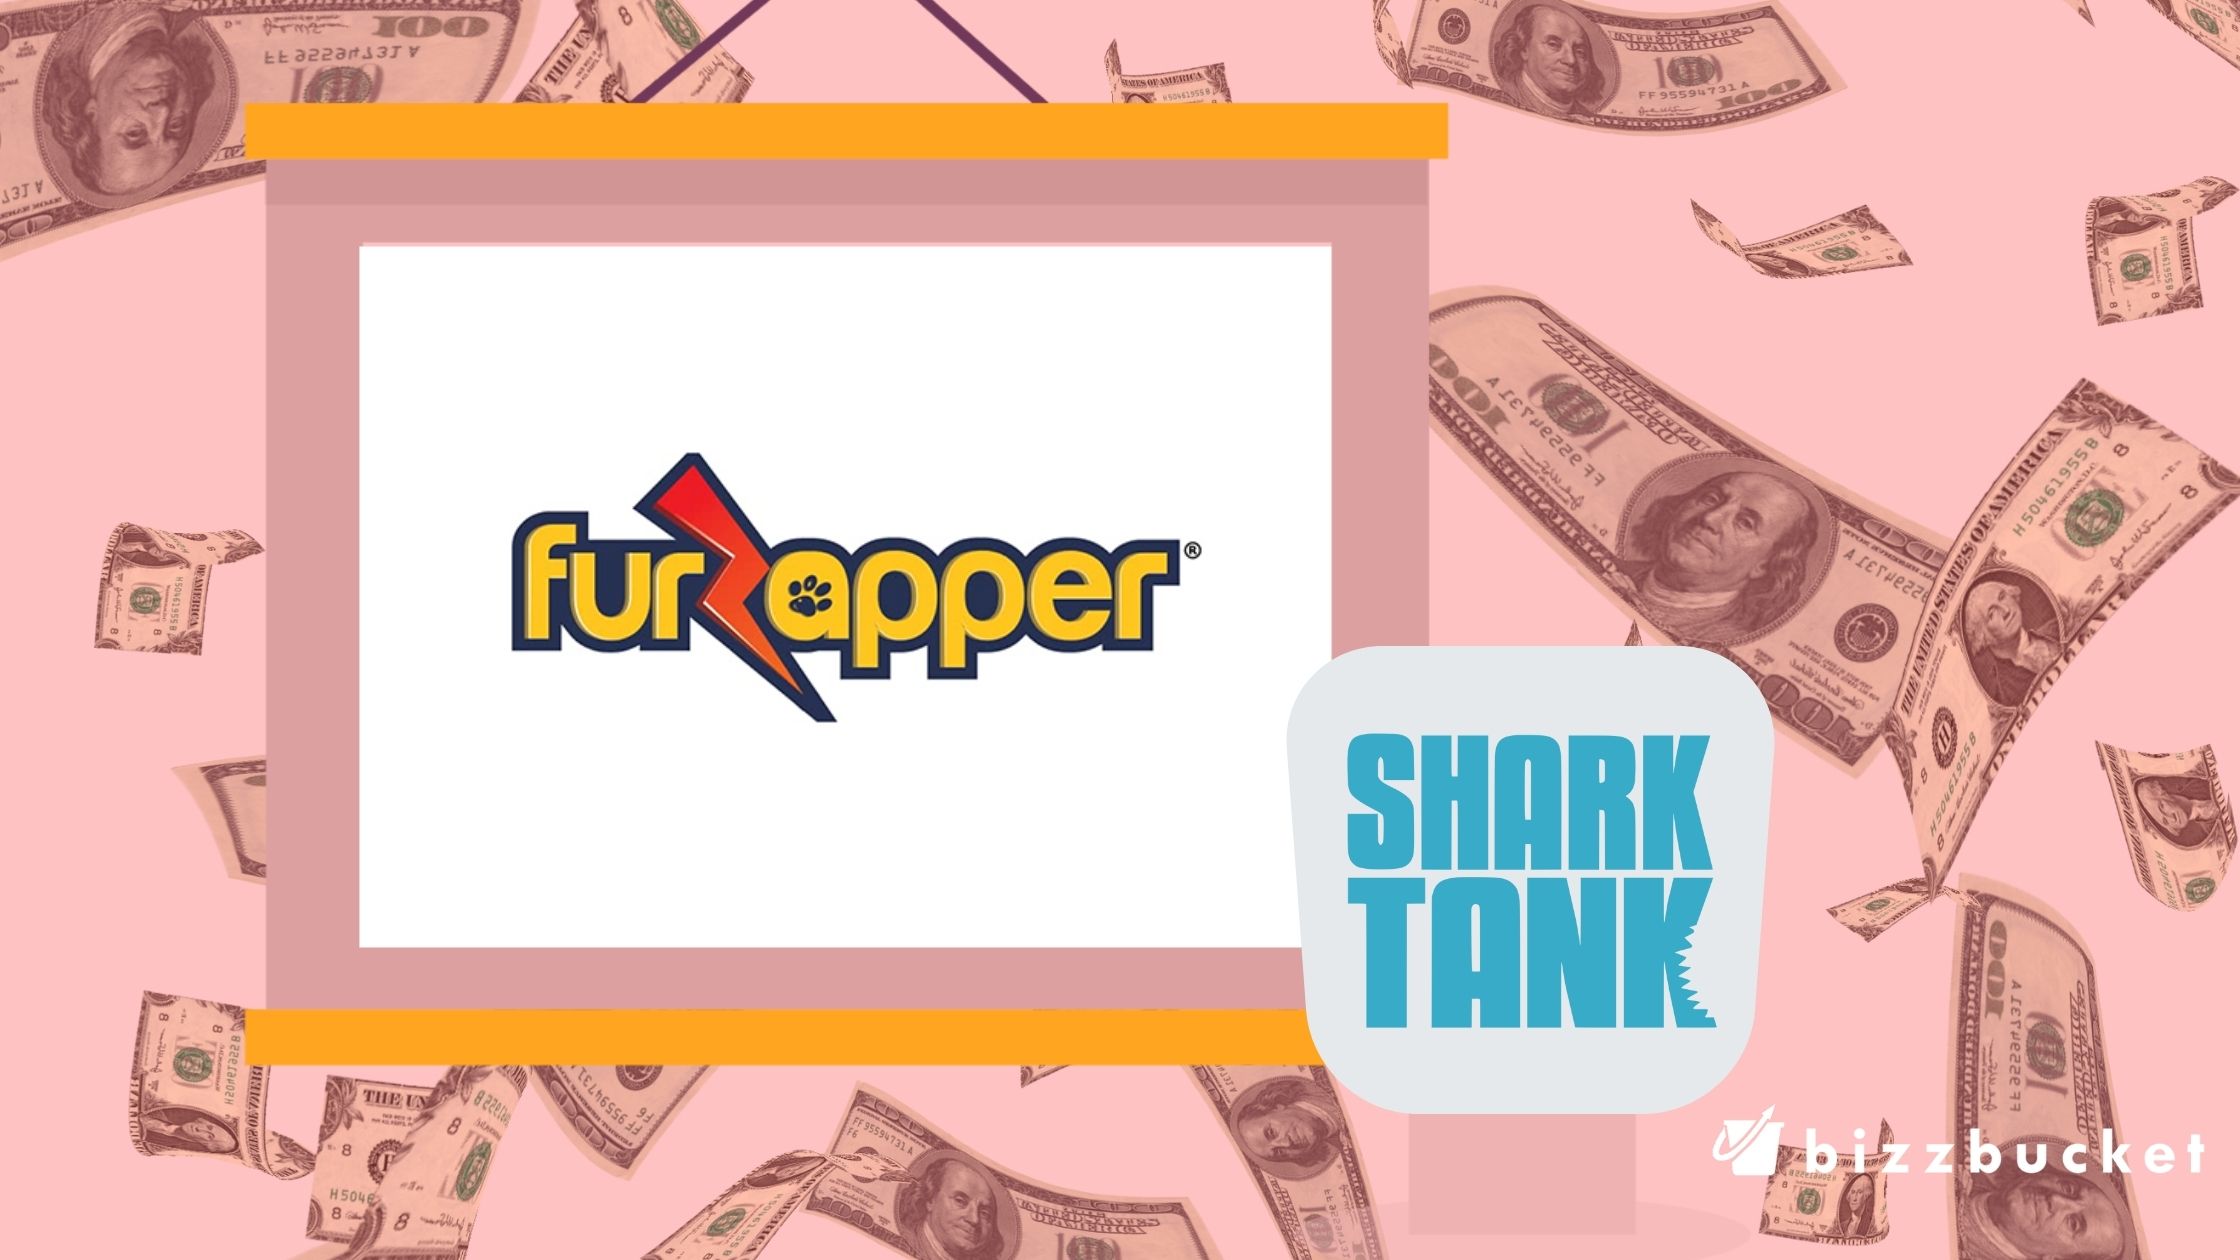 Fuzapper shark tank update